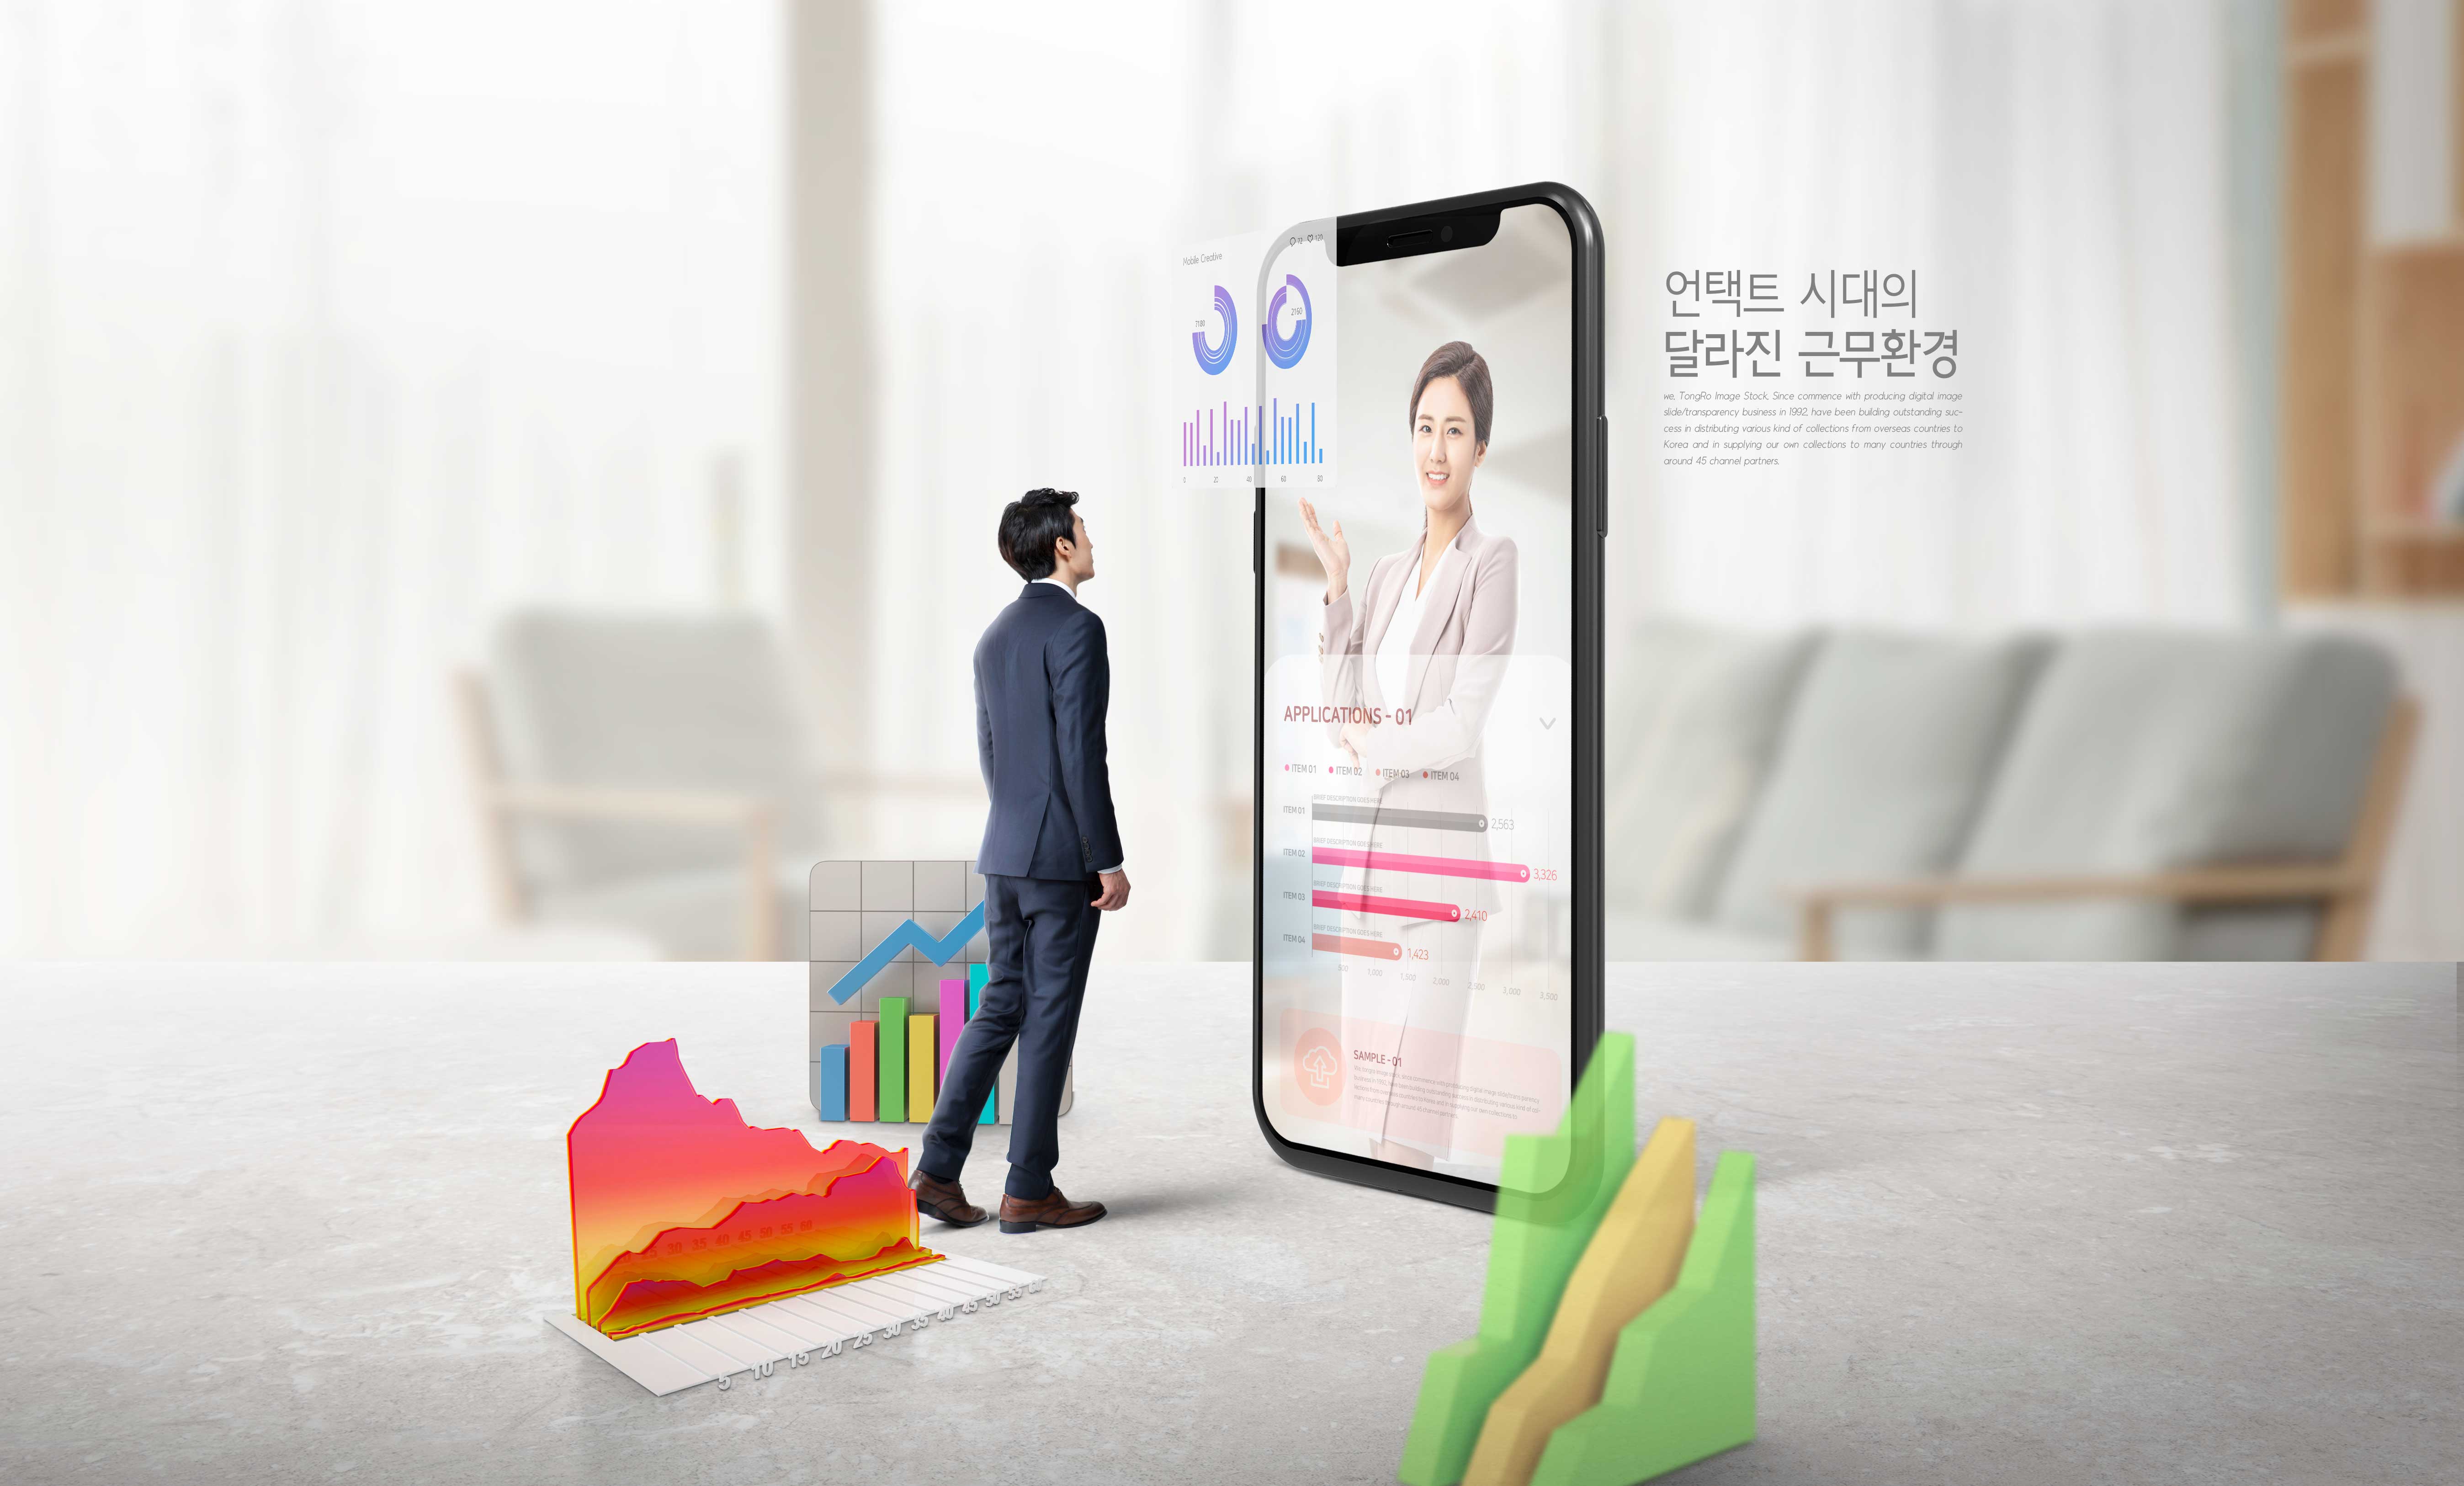 商业办公新模式手机视频推广主题图形psd韩国素材设计素材模板